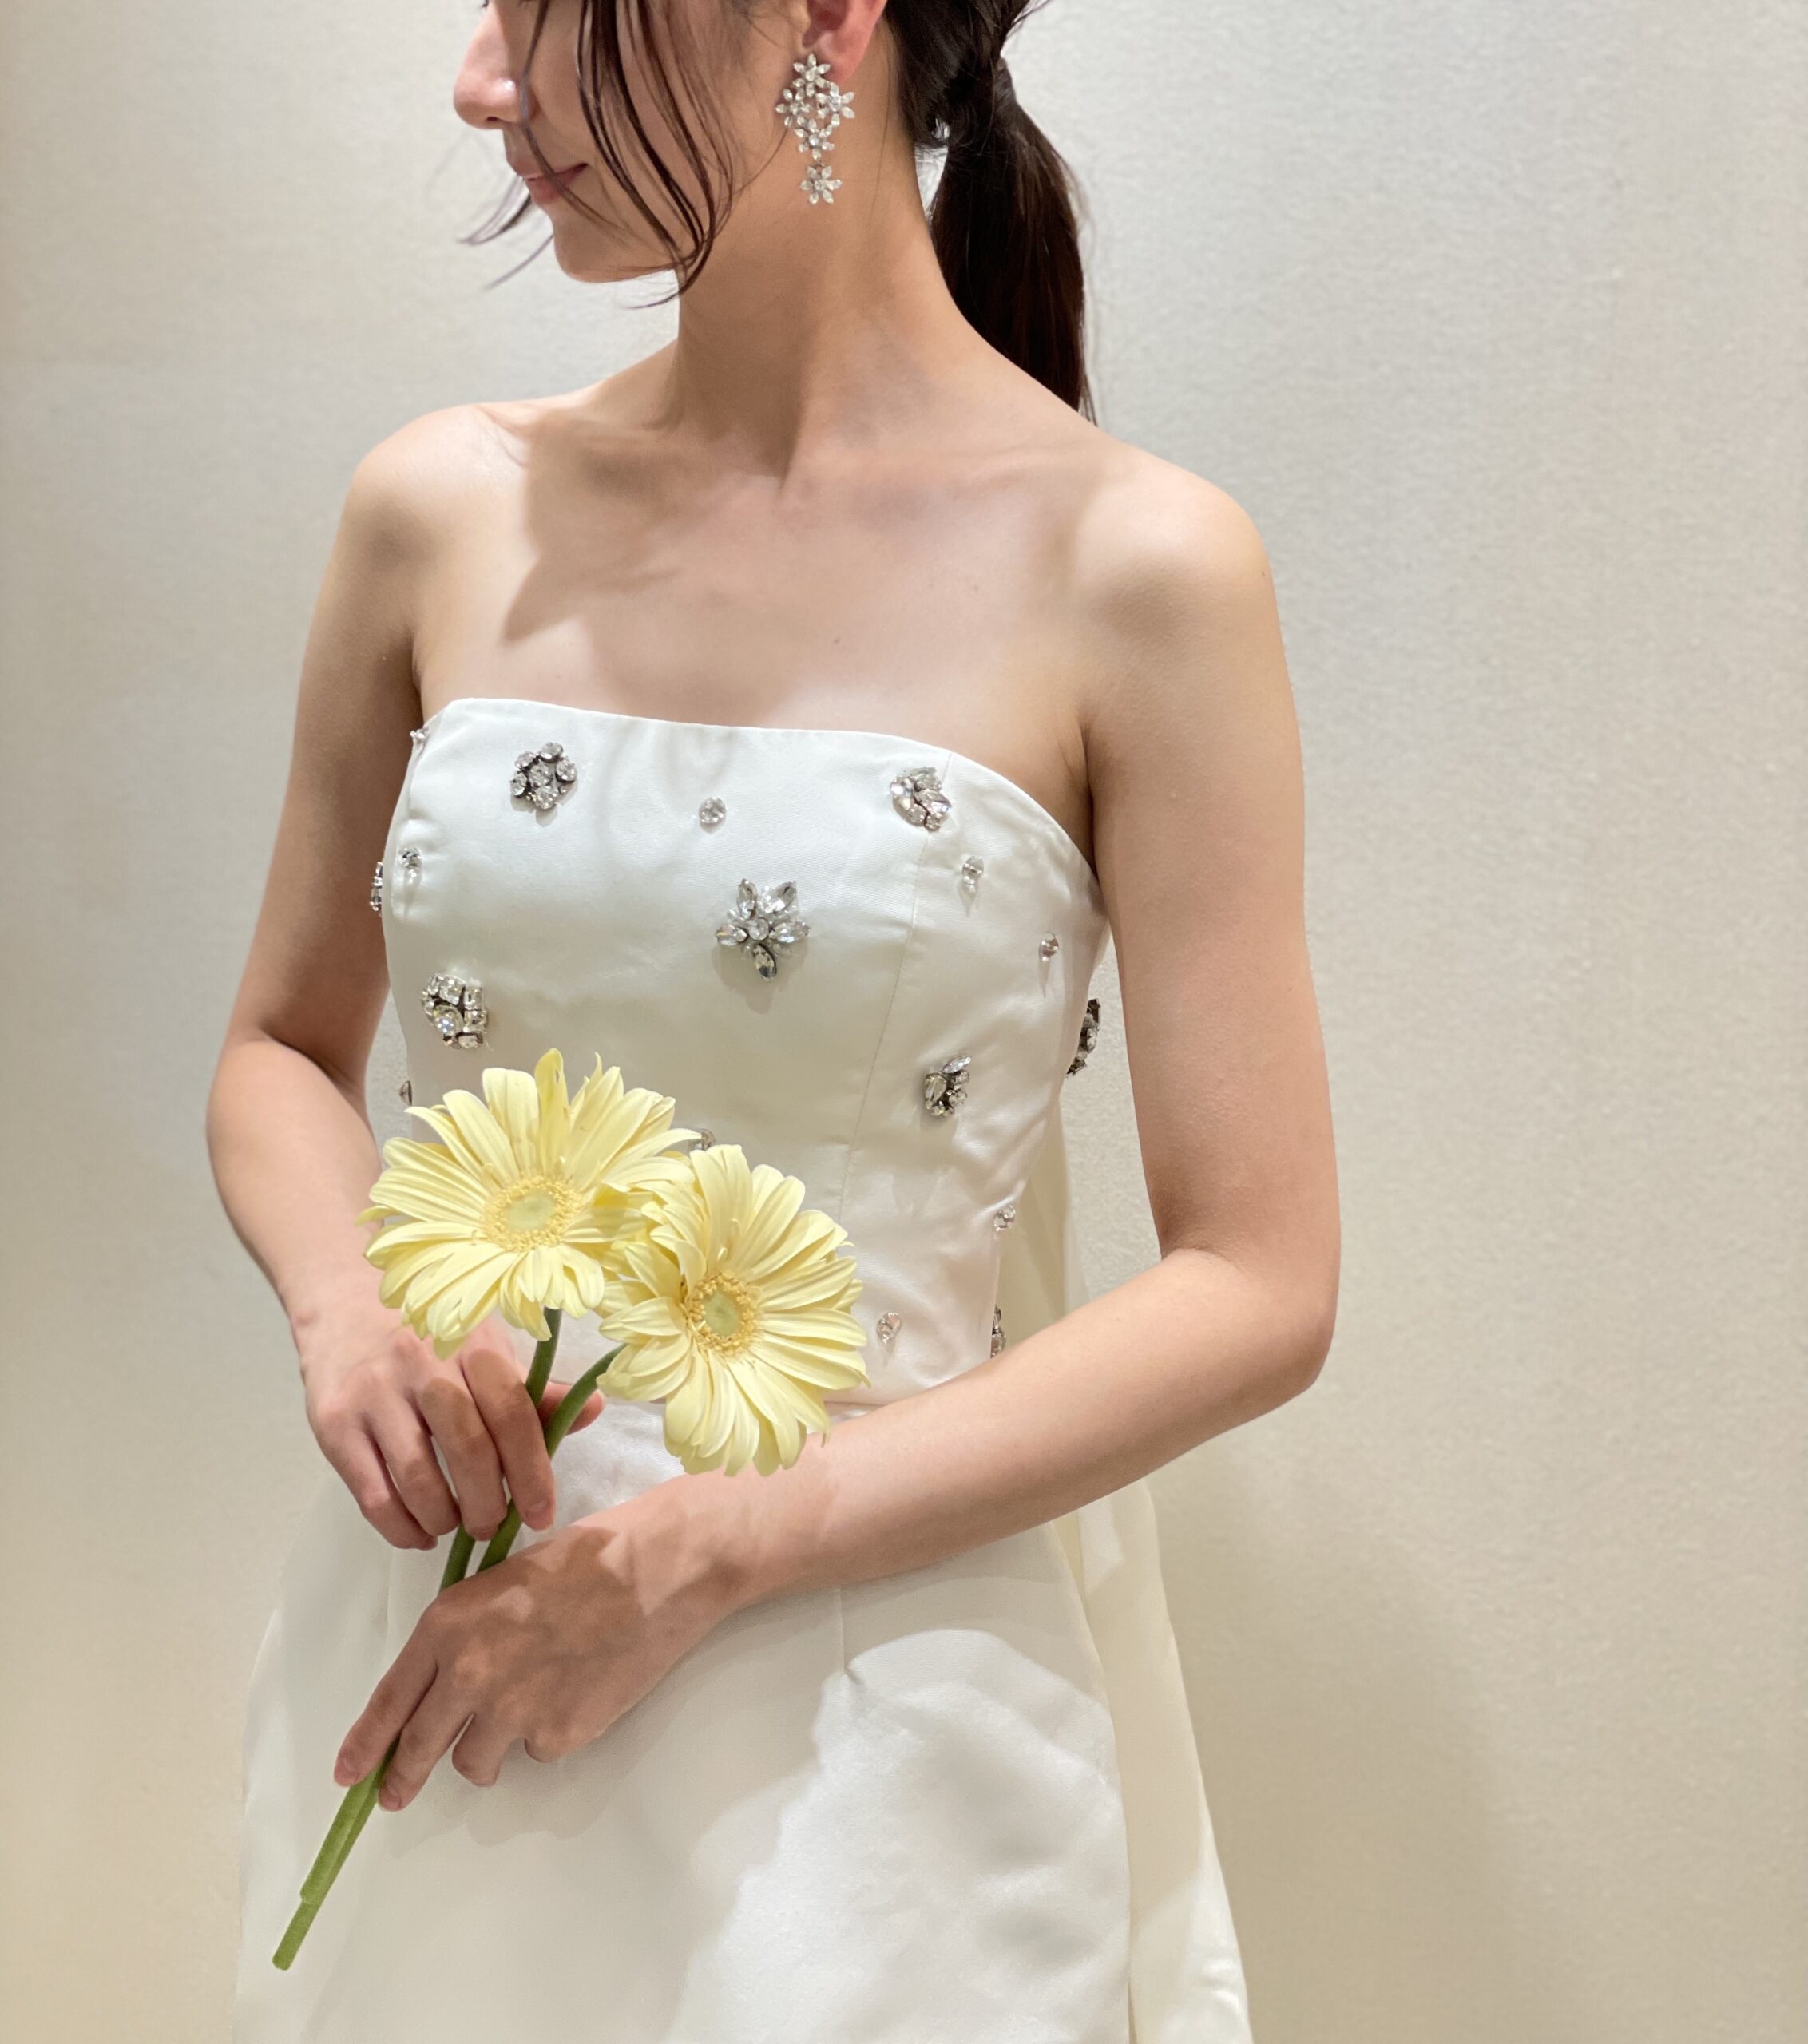 関西のナチュラルな結婚式会場におすすめしたいスレンダーラインが美しいシンプルなウェディングドレス